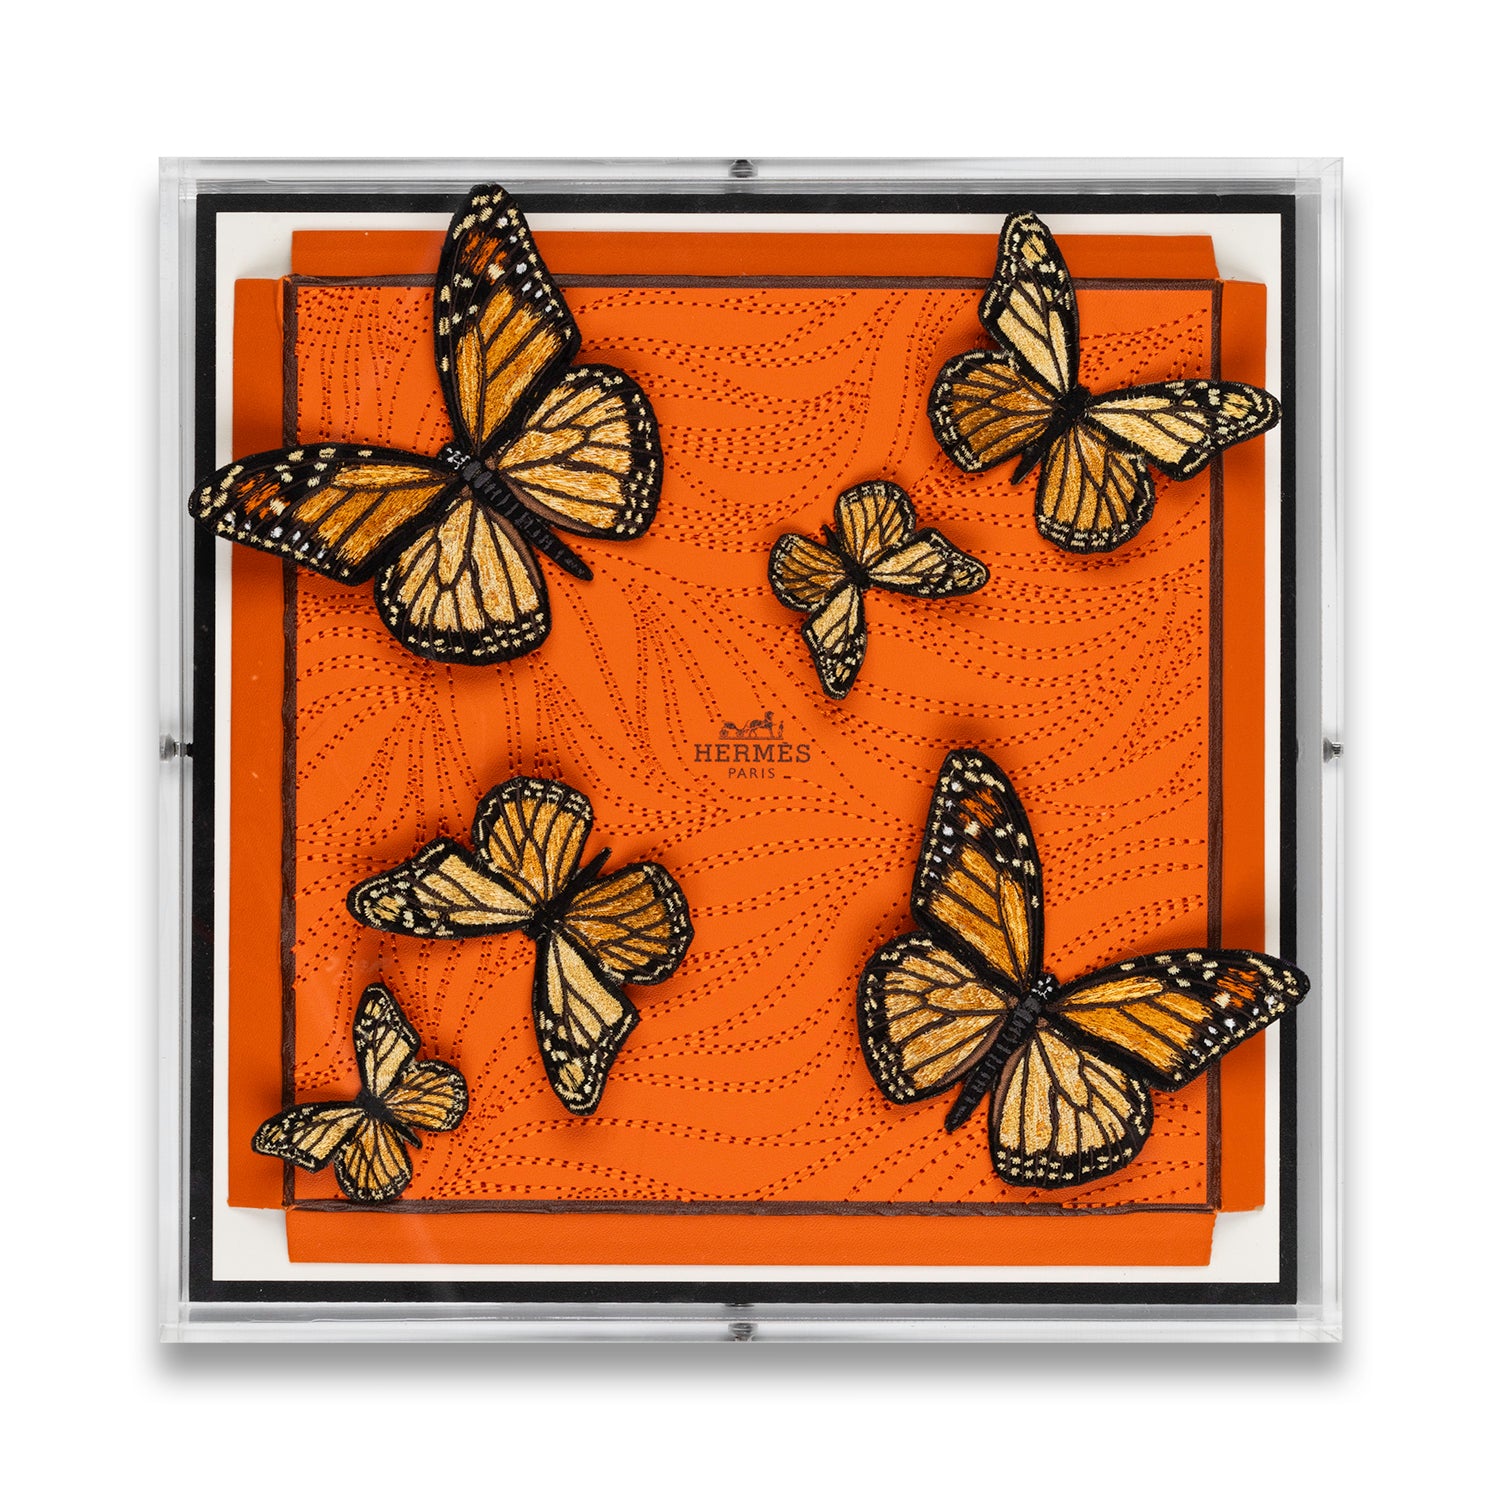 Hermes Orange Swarm Butterfly Swarm by Stephen Wilson (12x12x2